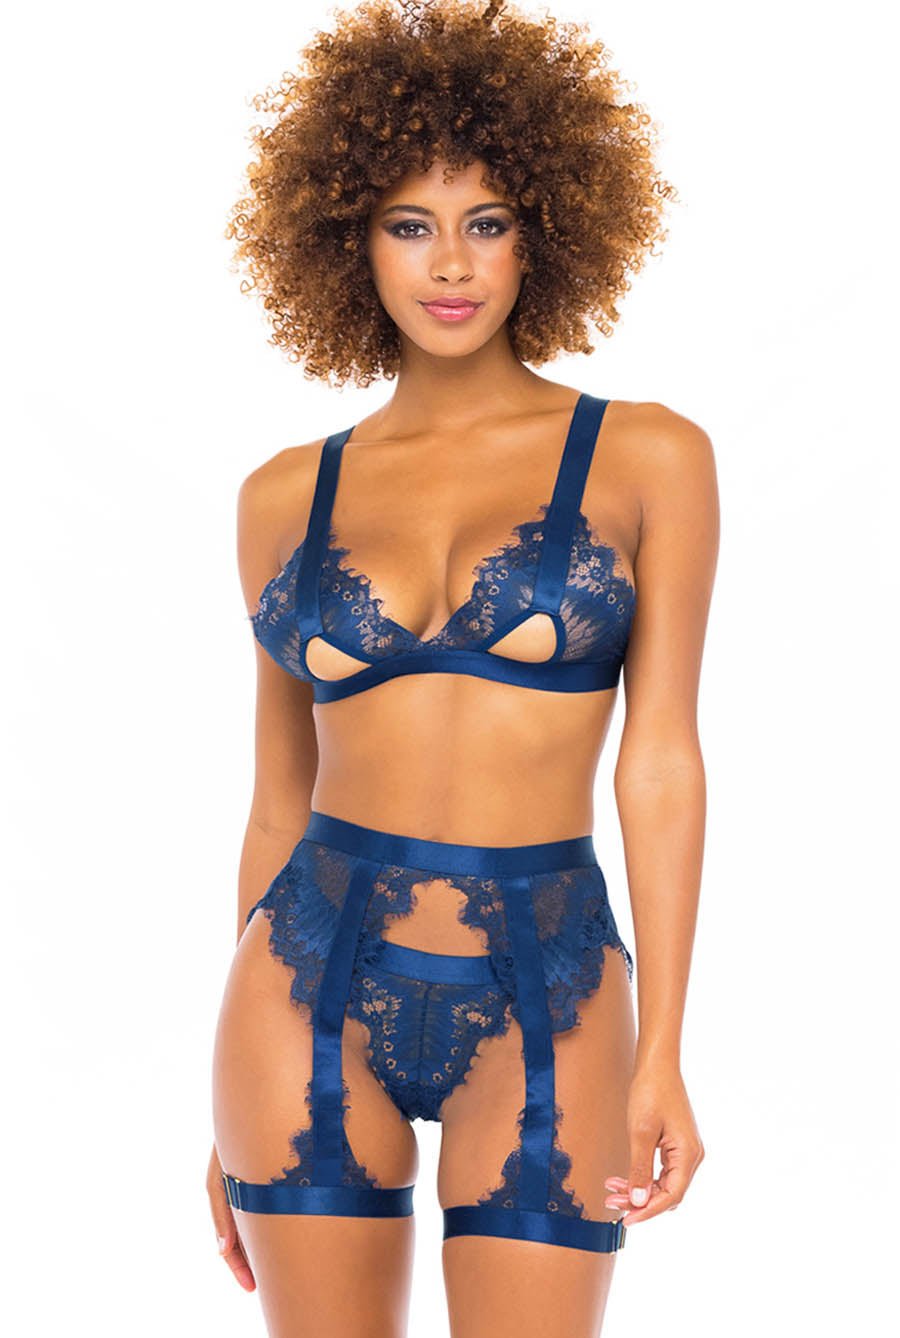 blue lace lingerie set